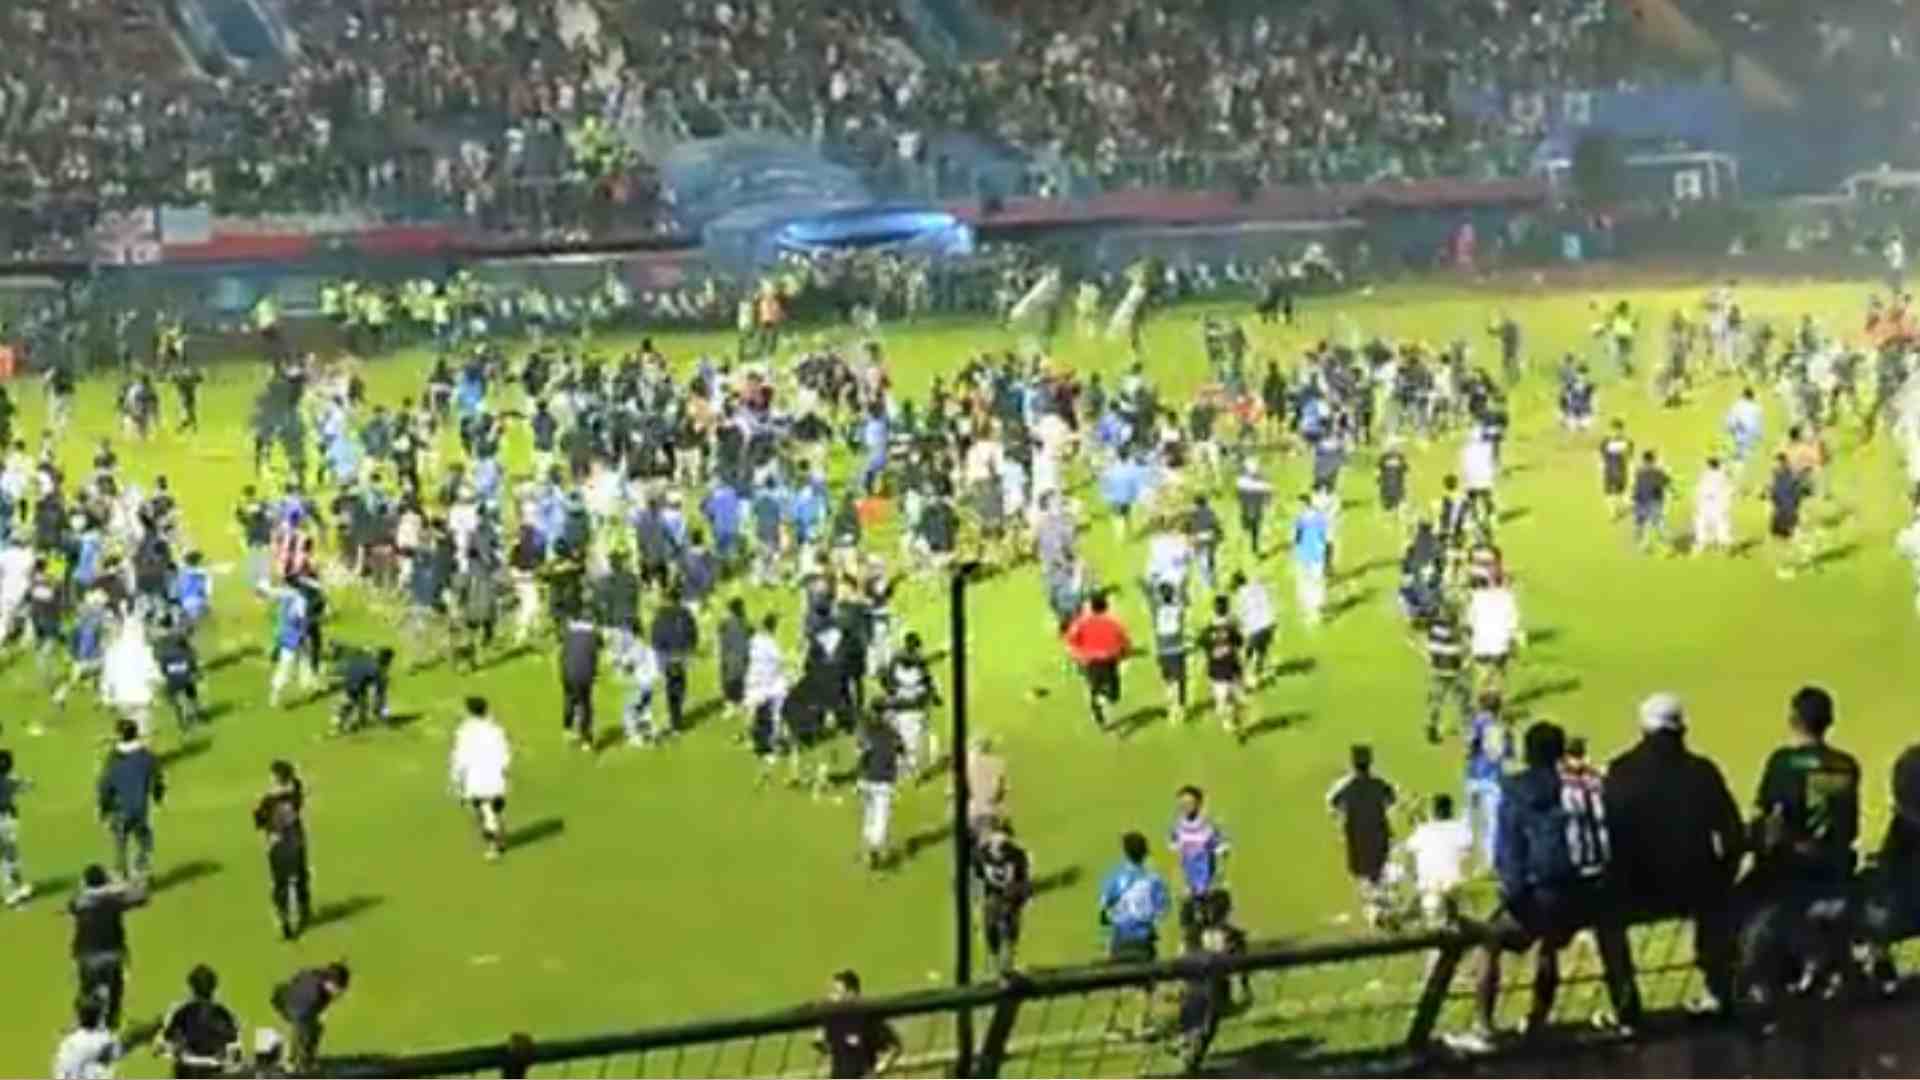 Tragédia com 125 mortos em jogo de futebol na Indonésia ocorreu por causa de portões estreitos, diz polícia